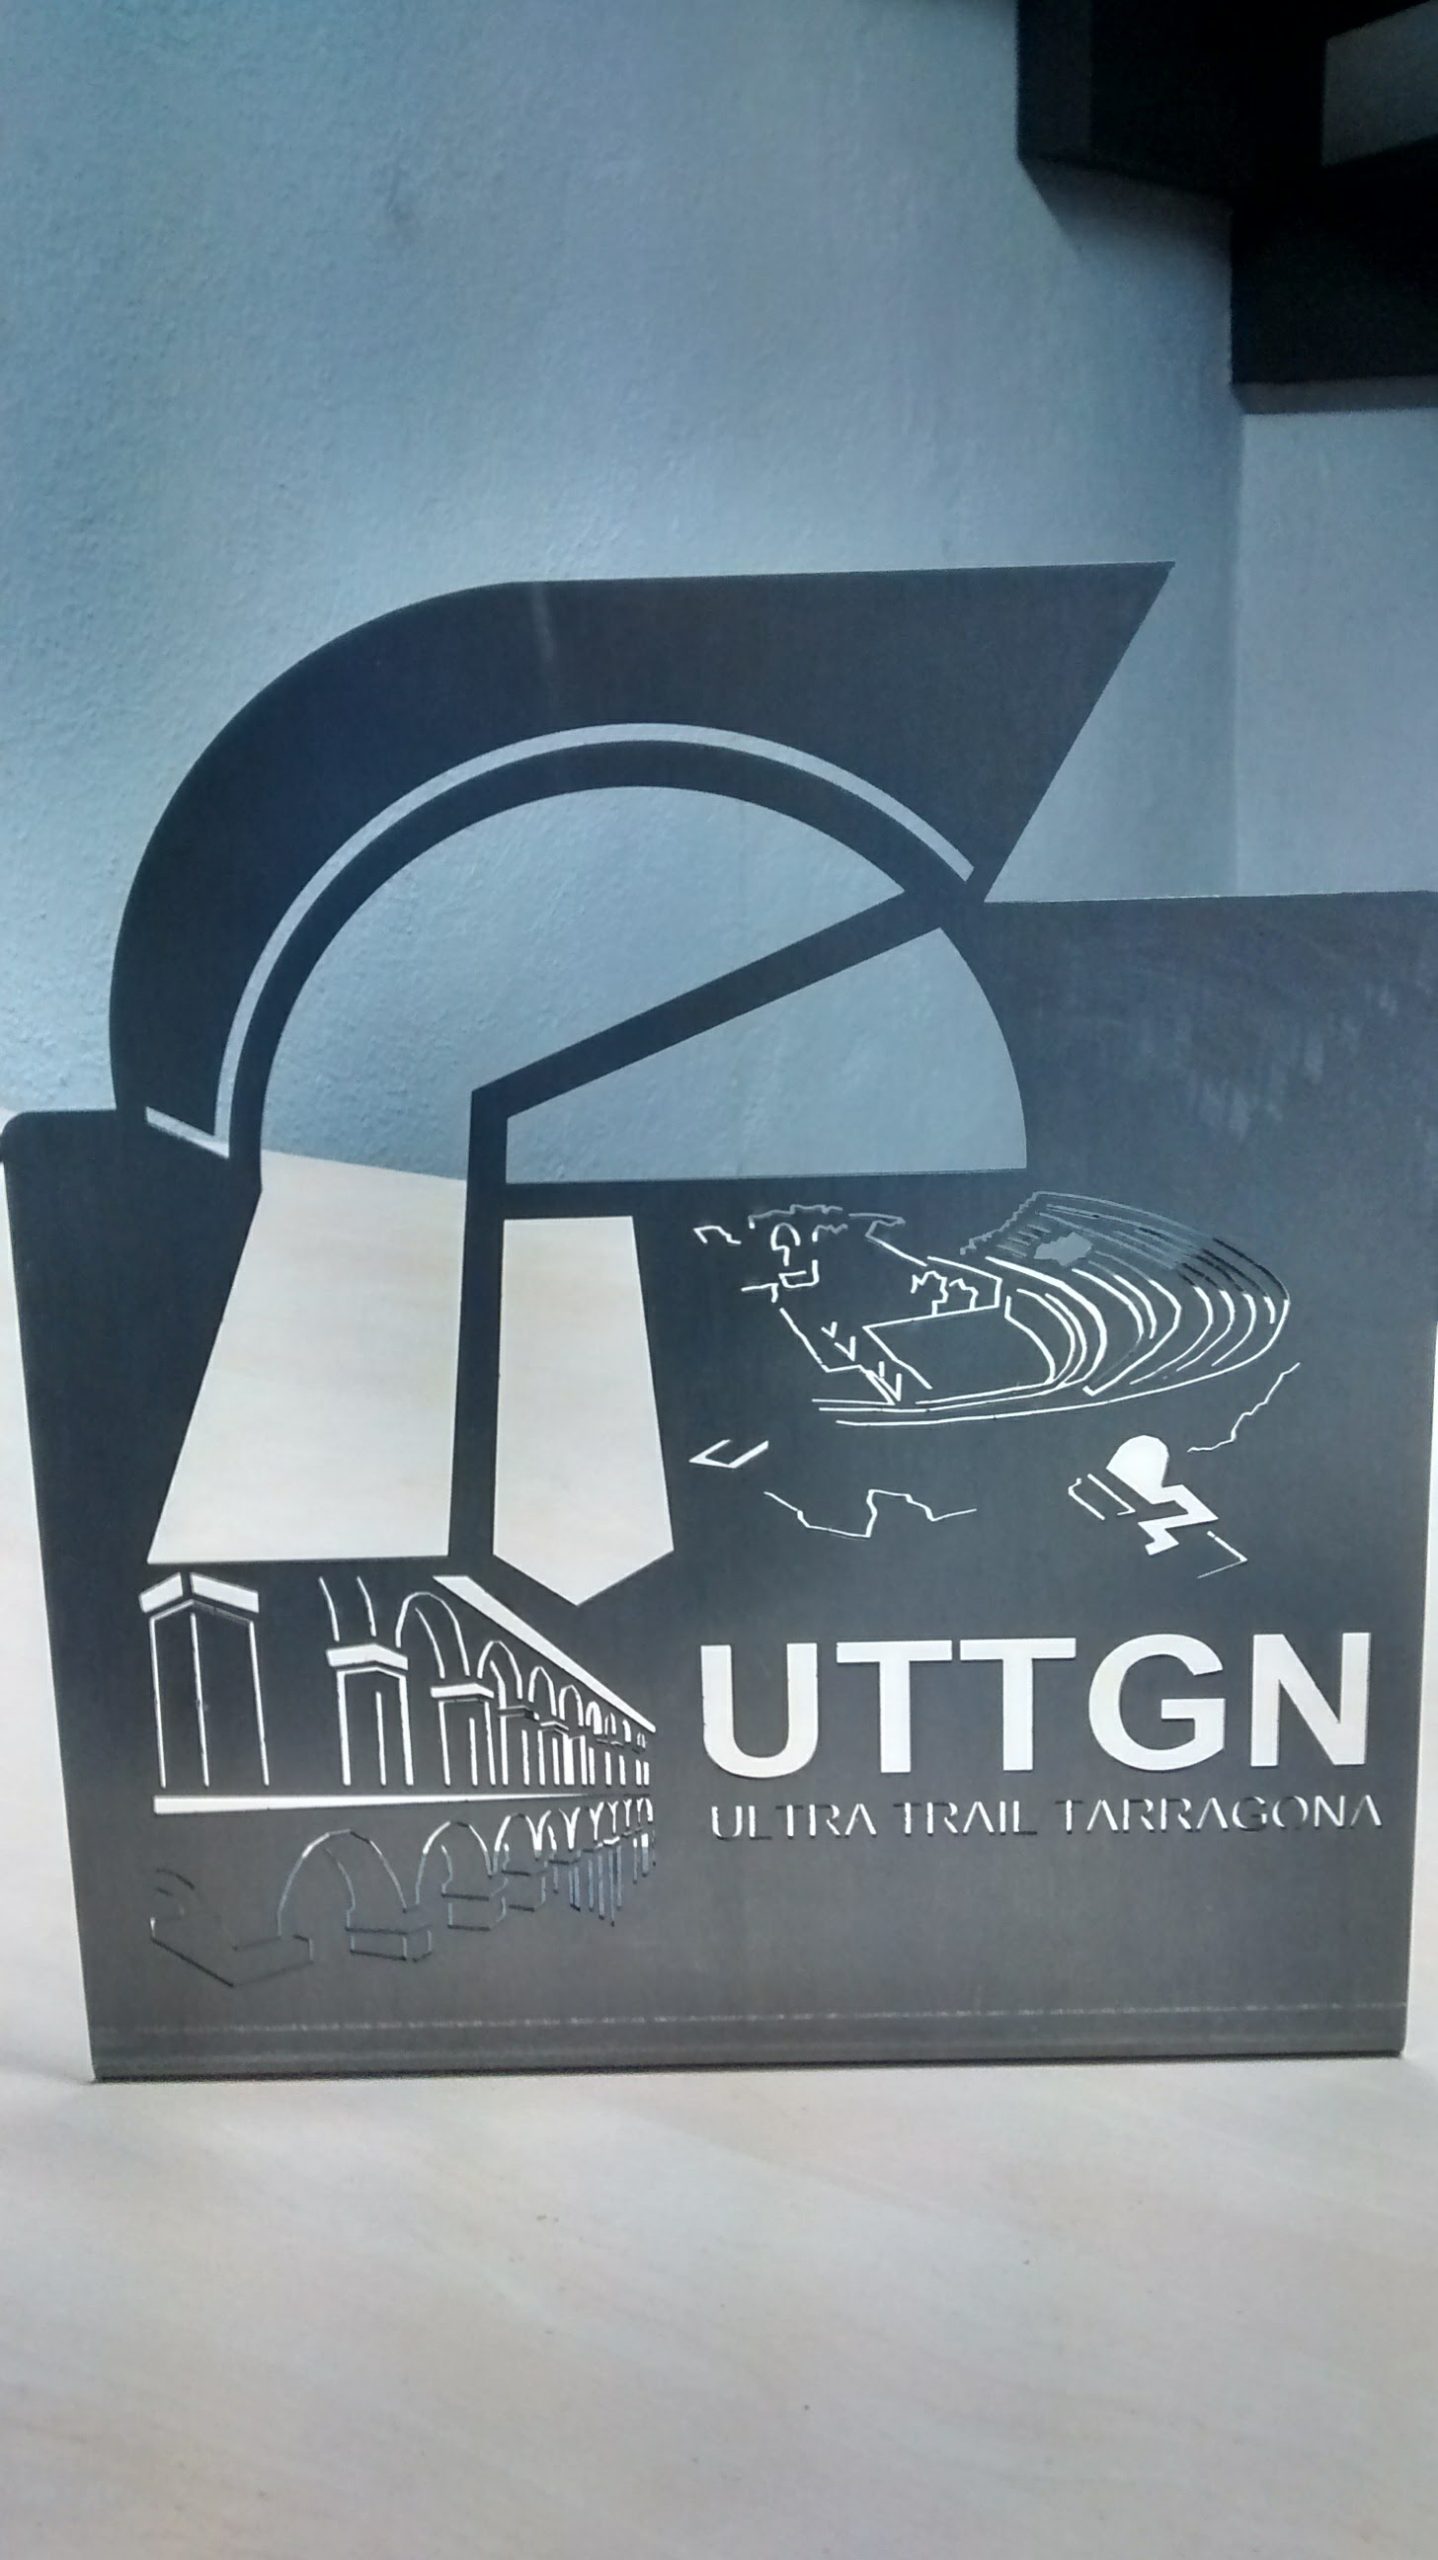 Trofeo personalizado UTT